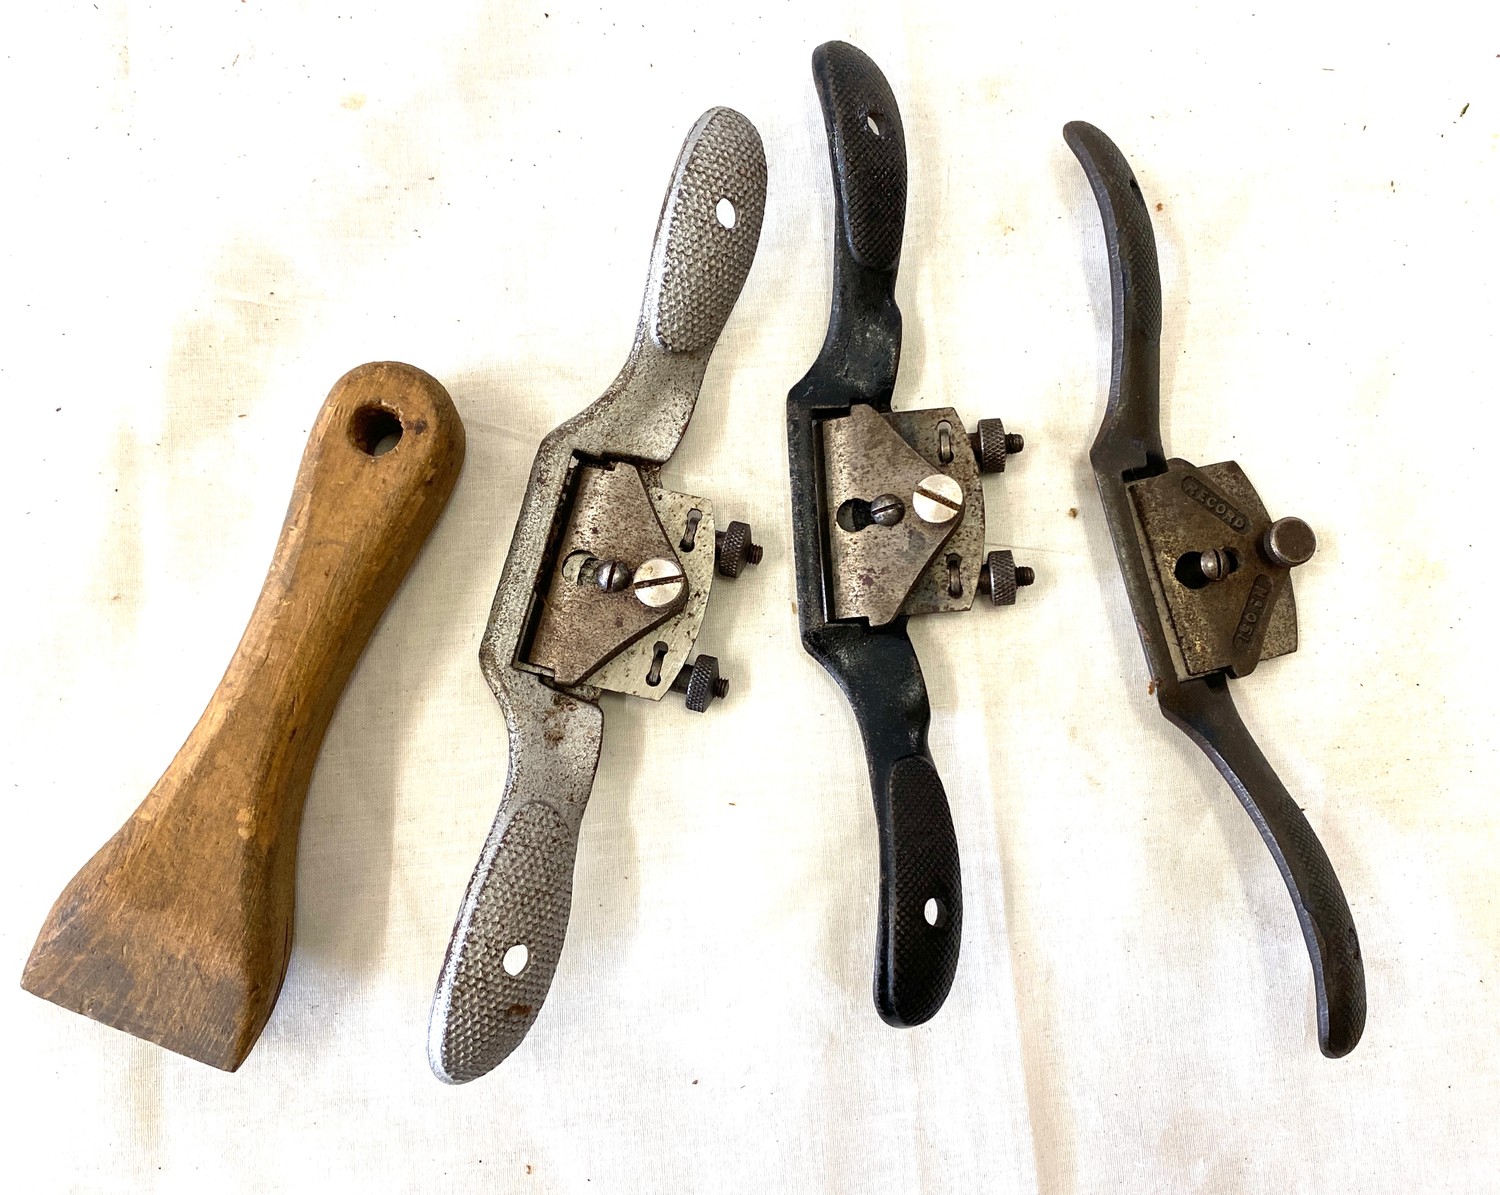 3 Spoke shaver and homemade blade sharperner